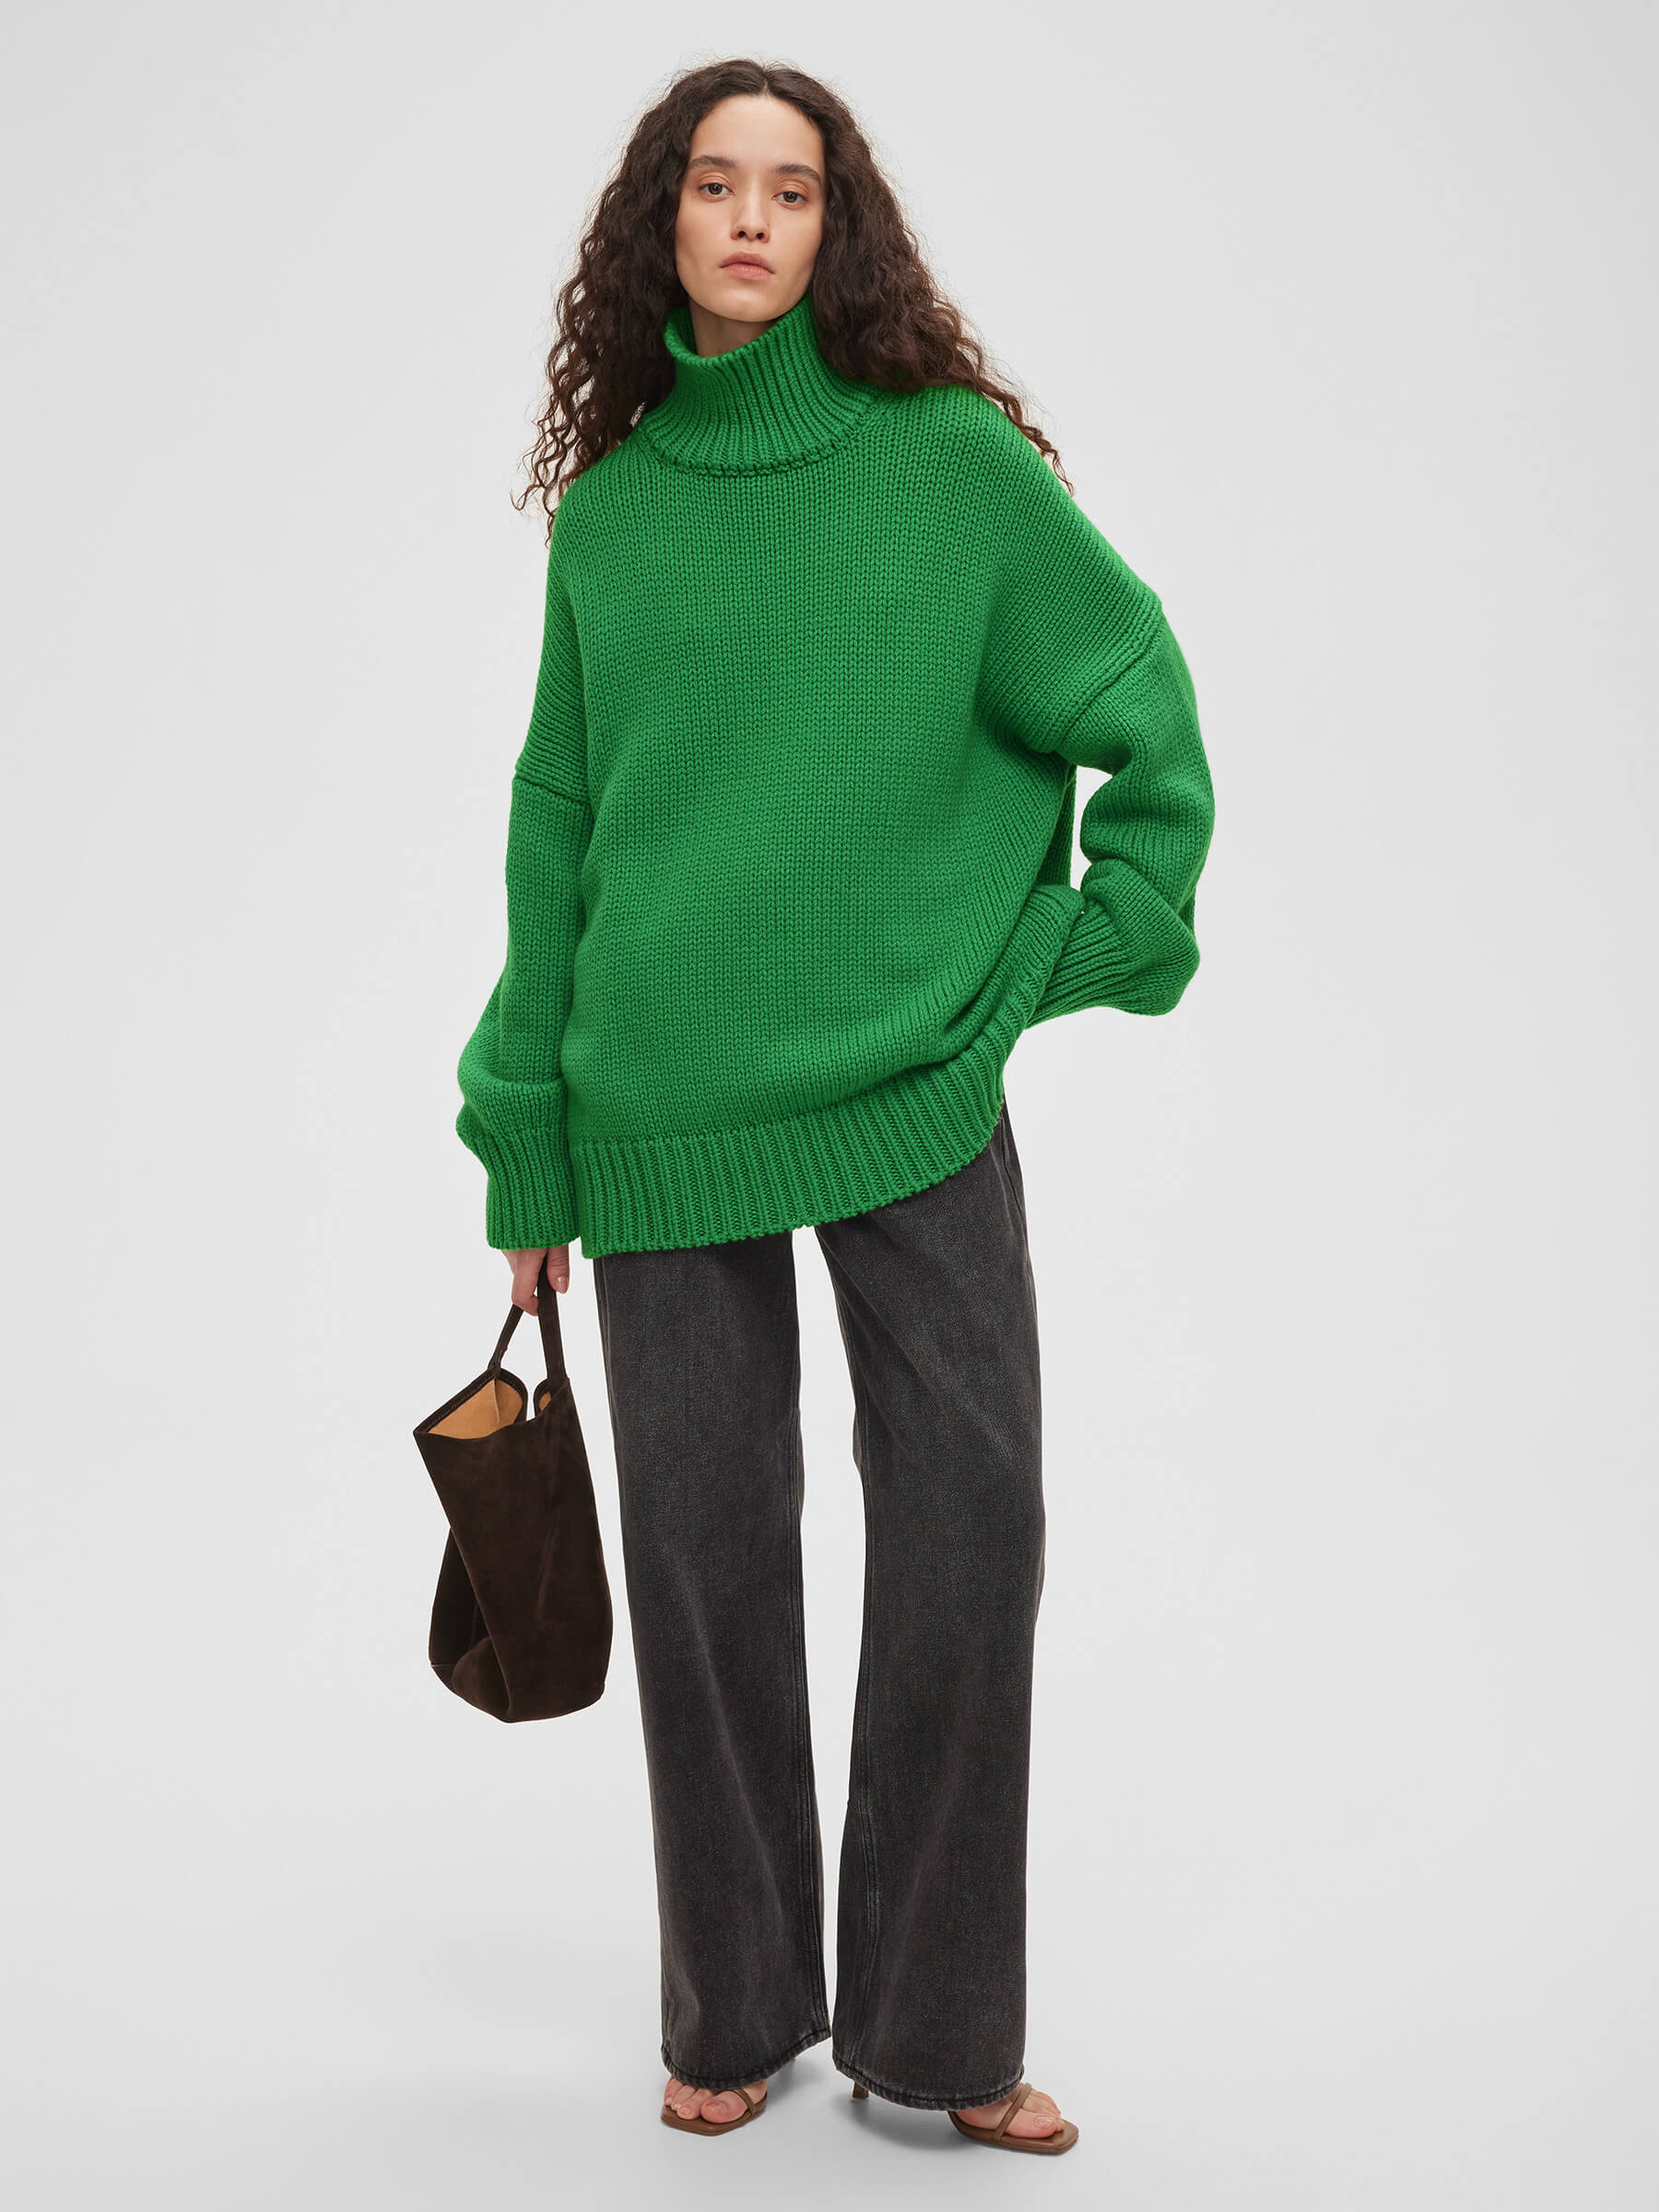 Свитер женский крупной вязки из шерсти, цвет – зеленый свитер длинный рукав крупная вязка размер 44 46 зеленый